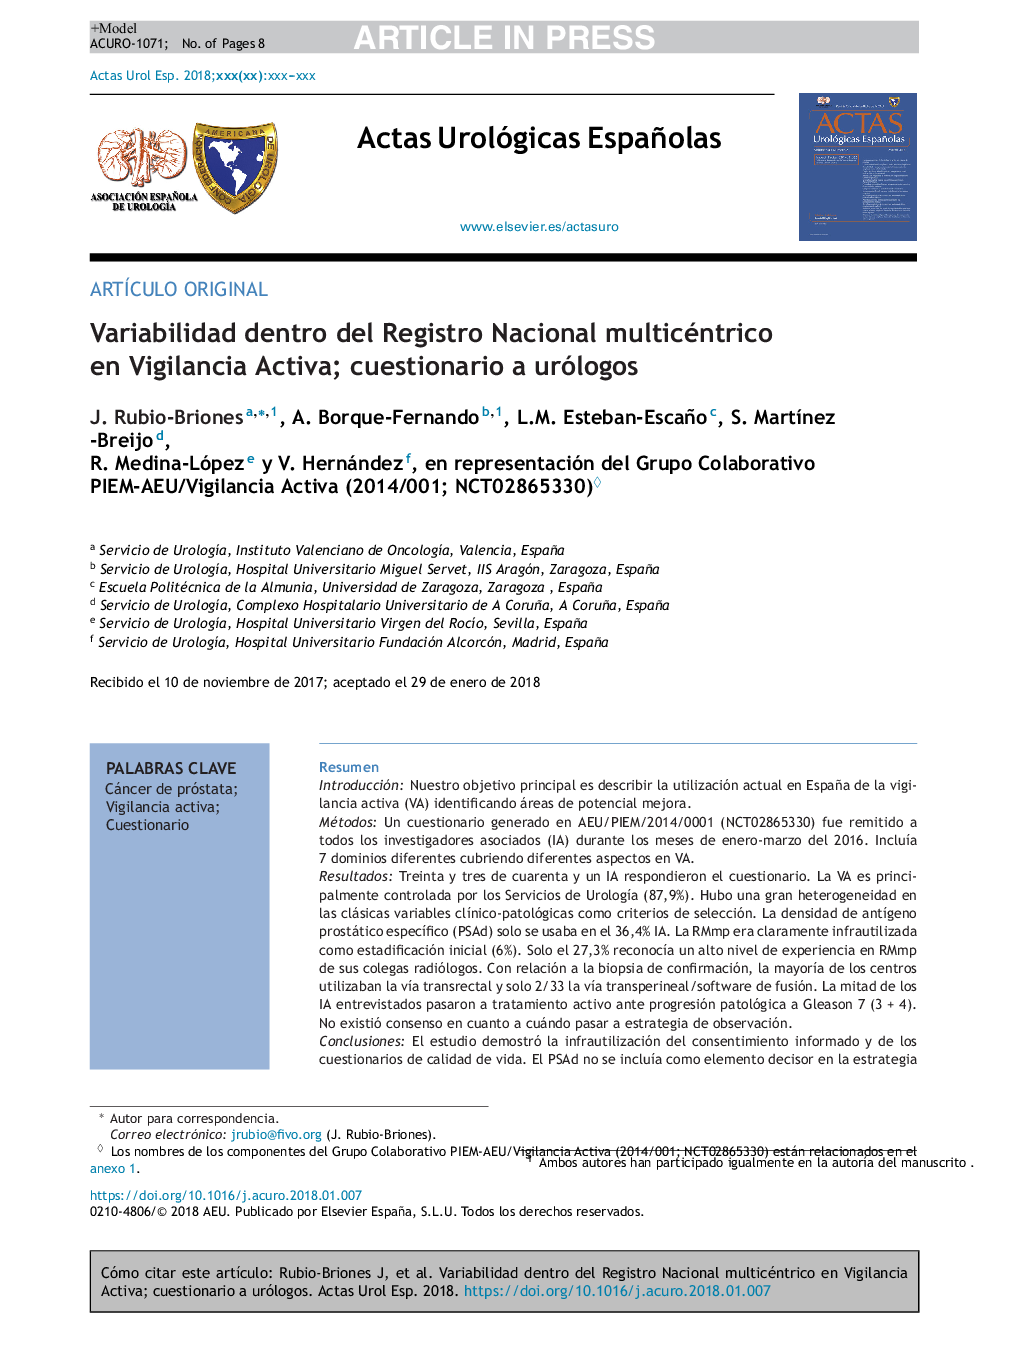 Variabilidad dentro del Registro Nacional multicéntrico en Vigilancia Activa; cuestionario a urólogos